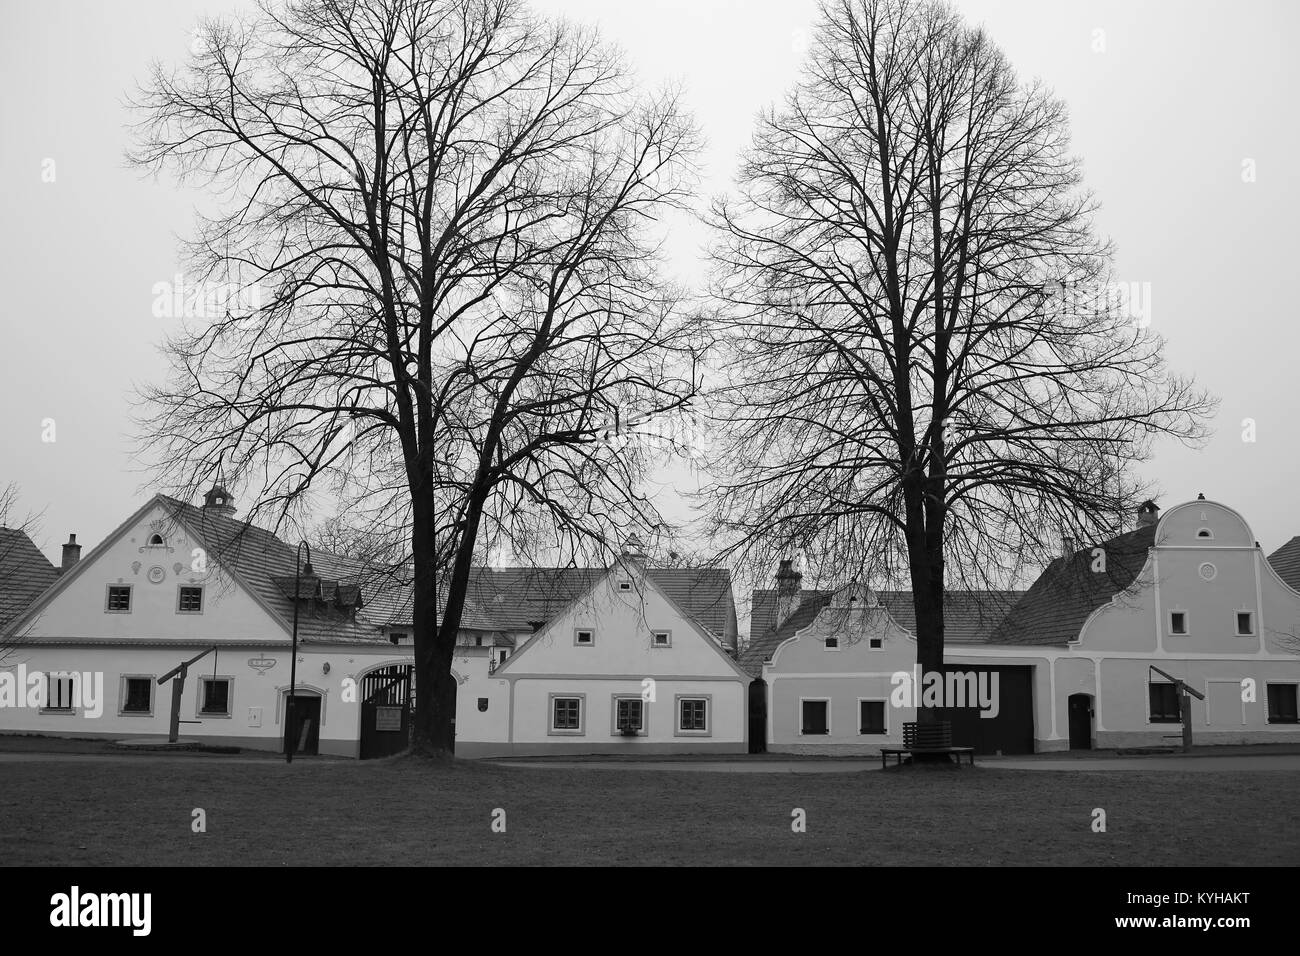 Maisons anciennes dans le sud de la Bohème ou Folk style baroque rural (18e et 19e siècle) dans la région de Holasovice, village du sud de la Bohême, République Tchèque Banque D'Images